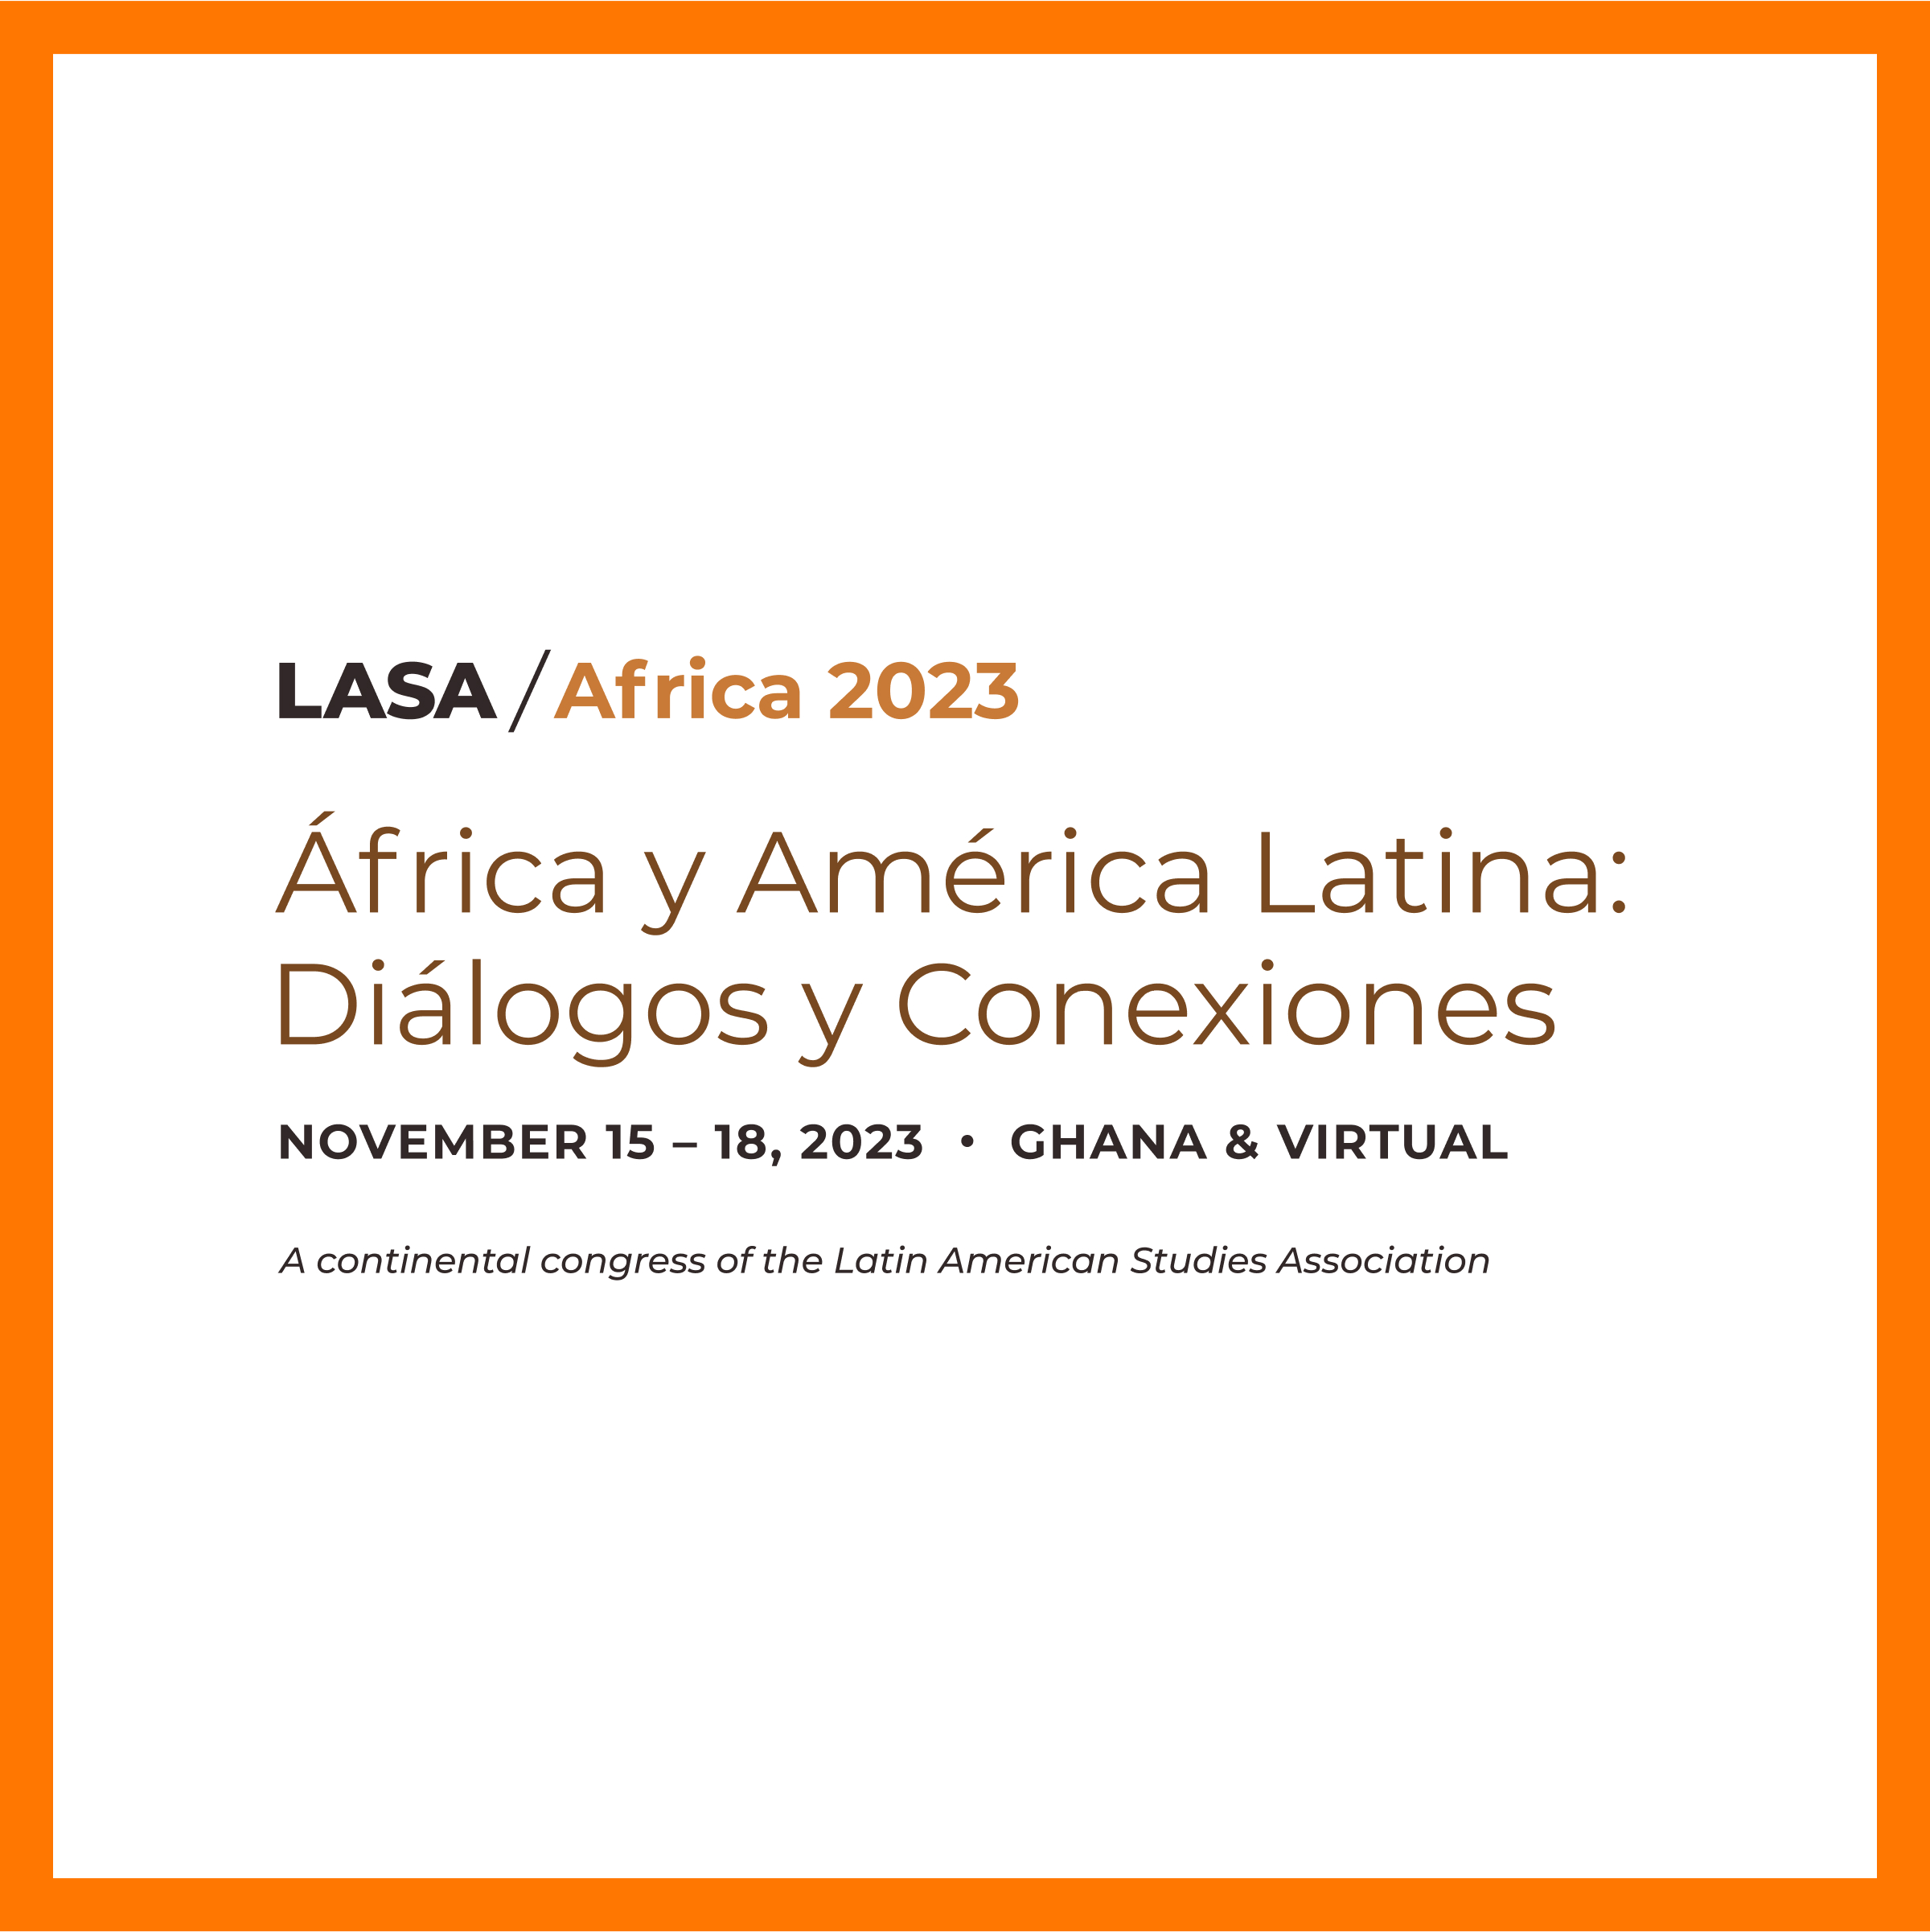 LASA/Africa 2023